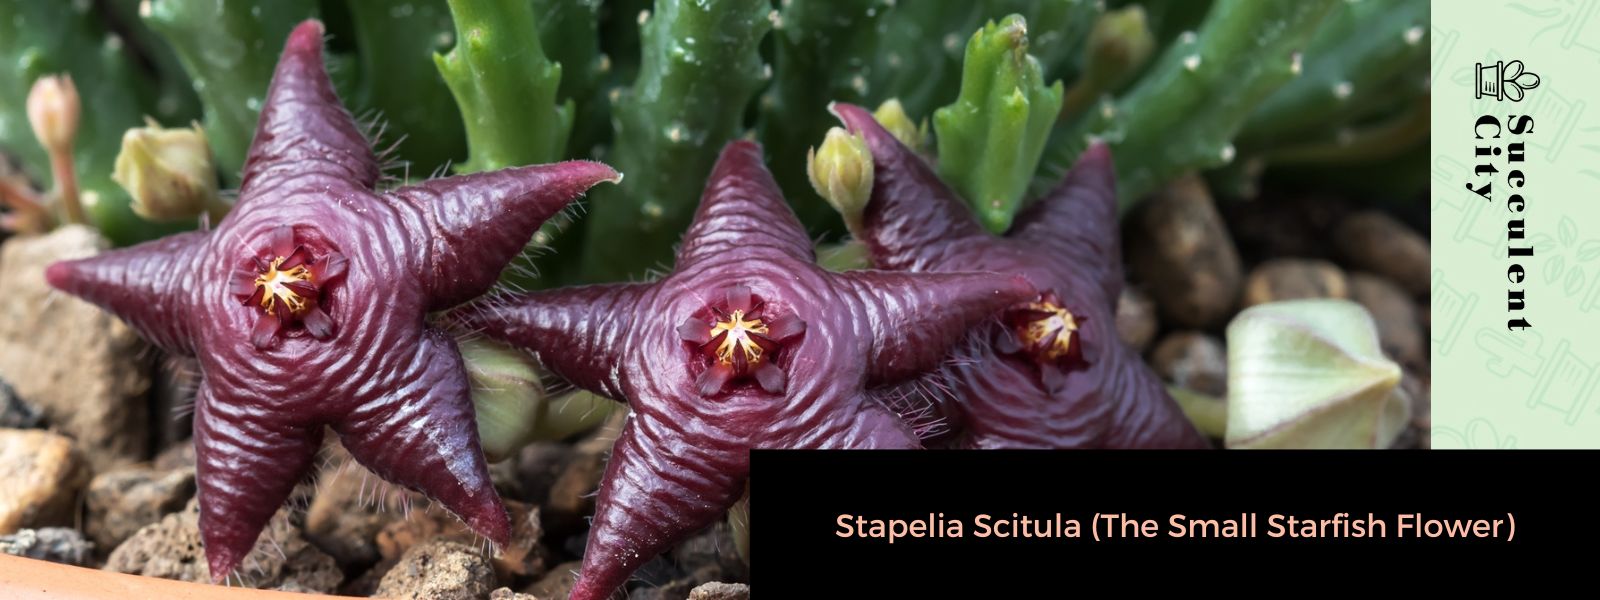 Stapelia Scitula (La pequeña flor de estrella de mar)